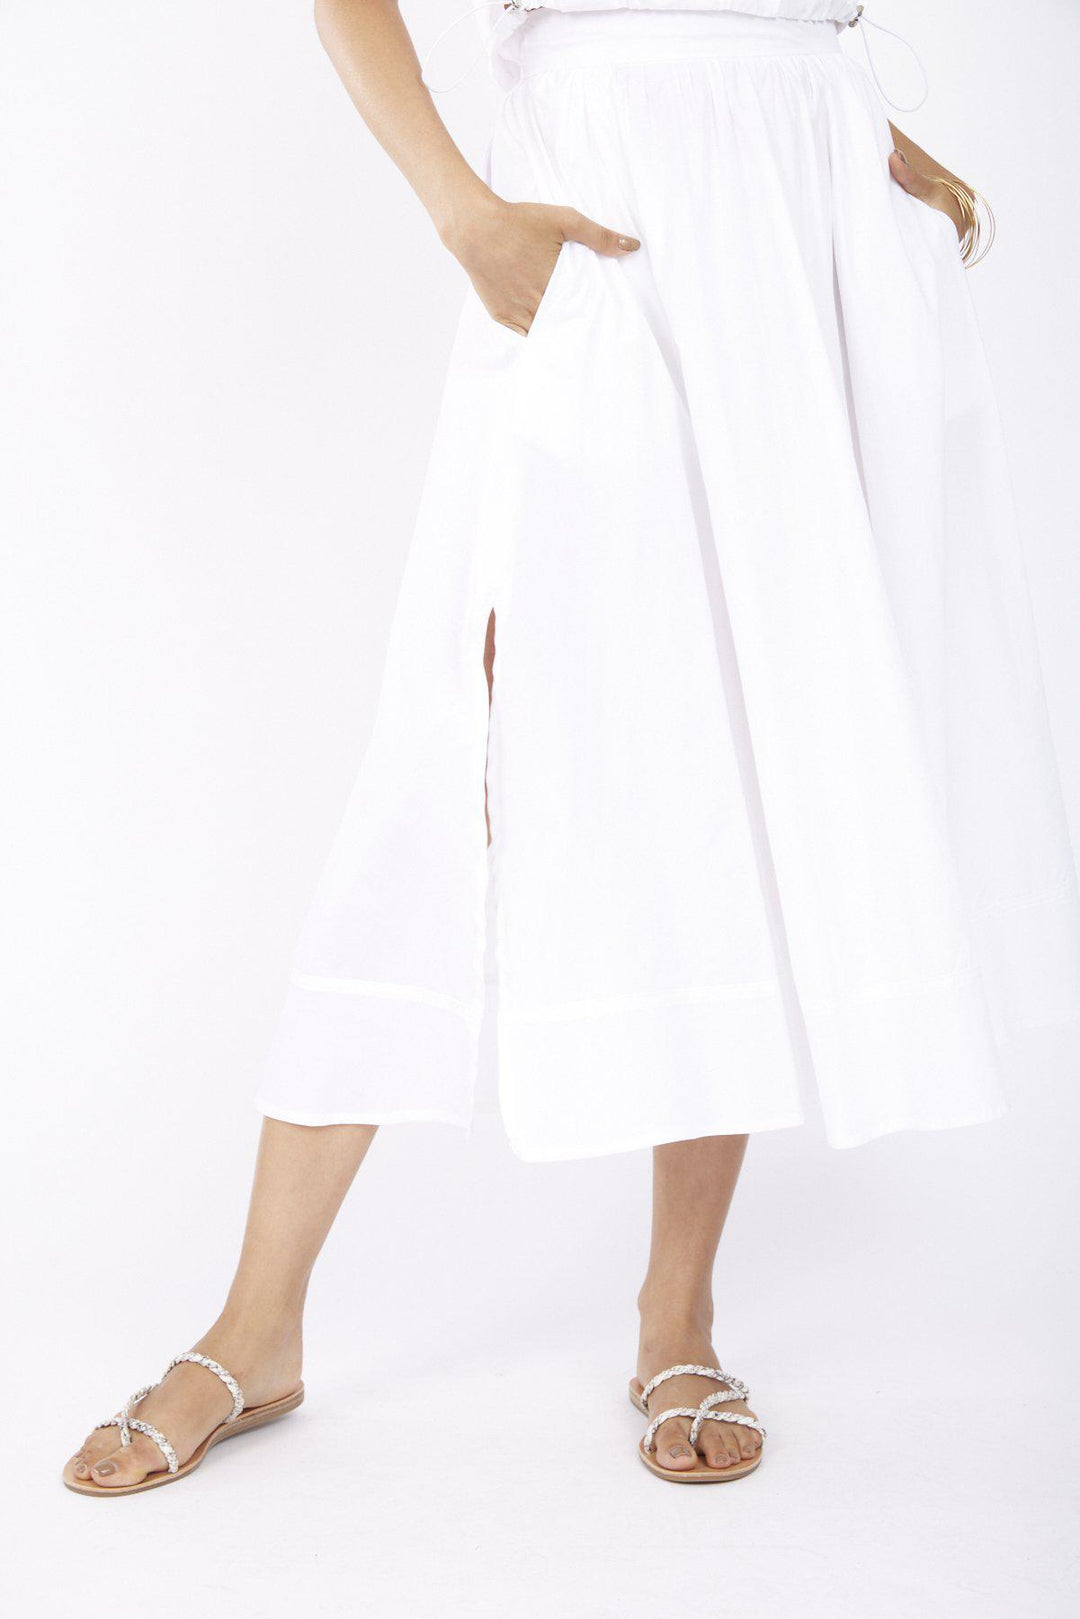 חצאית בירד בצבע לבן - Razili Studio